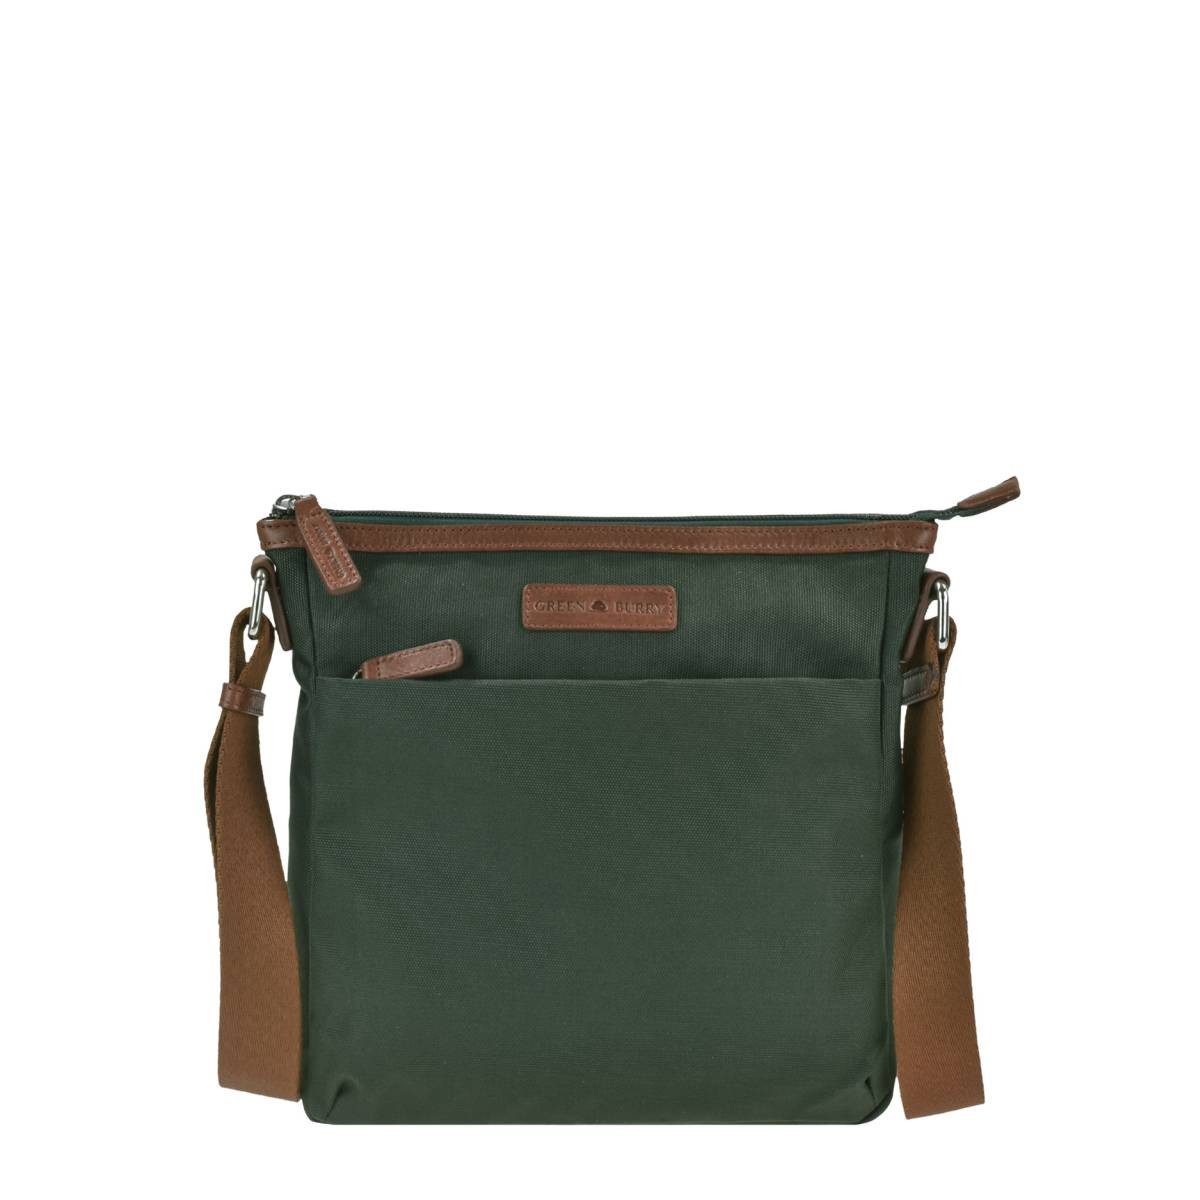 Greenburry Umhängetasche "Iris" Nylon Crossover Bag Crossbag 24x24cm, leicht, kompakt, praktisch, langer Gurt, grün